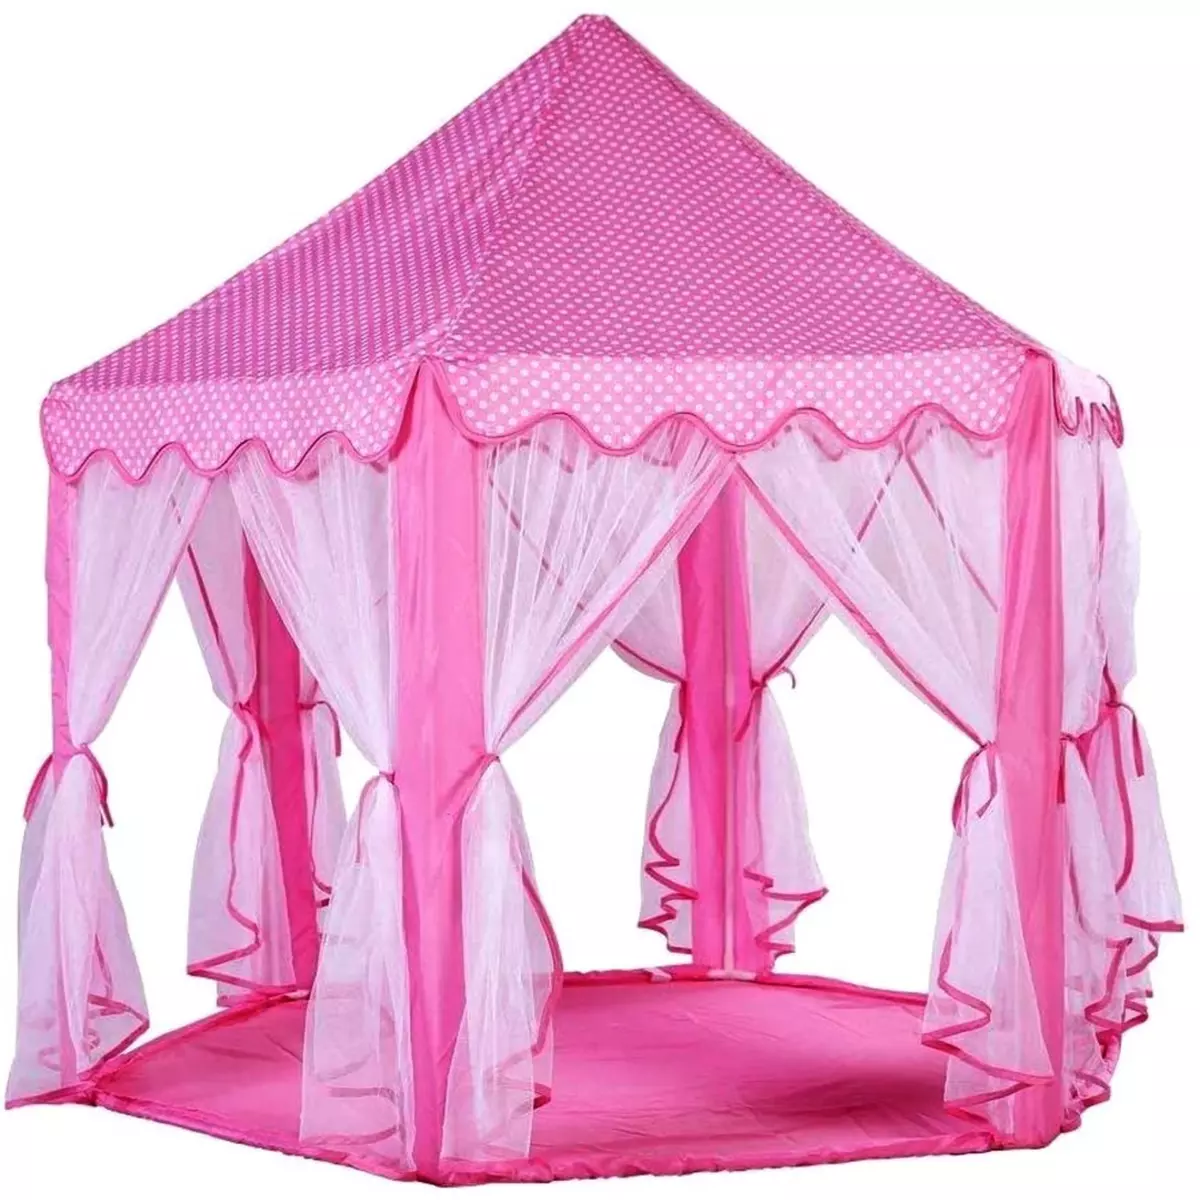  XXL Grand chateau en tissu rose princesse tente maison jouet enfant